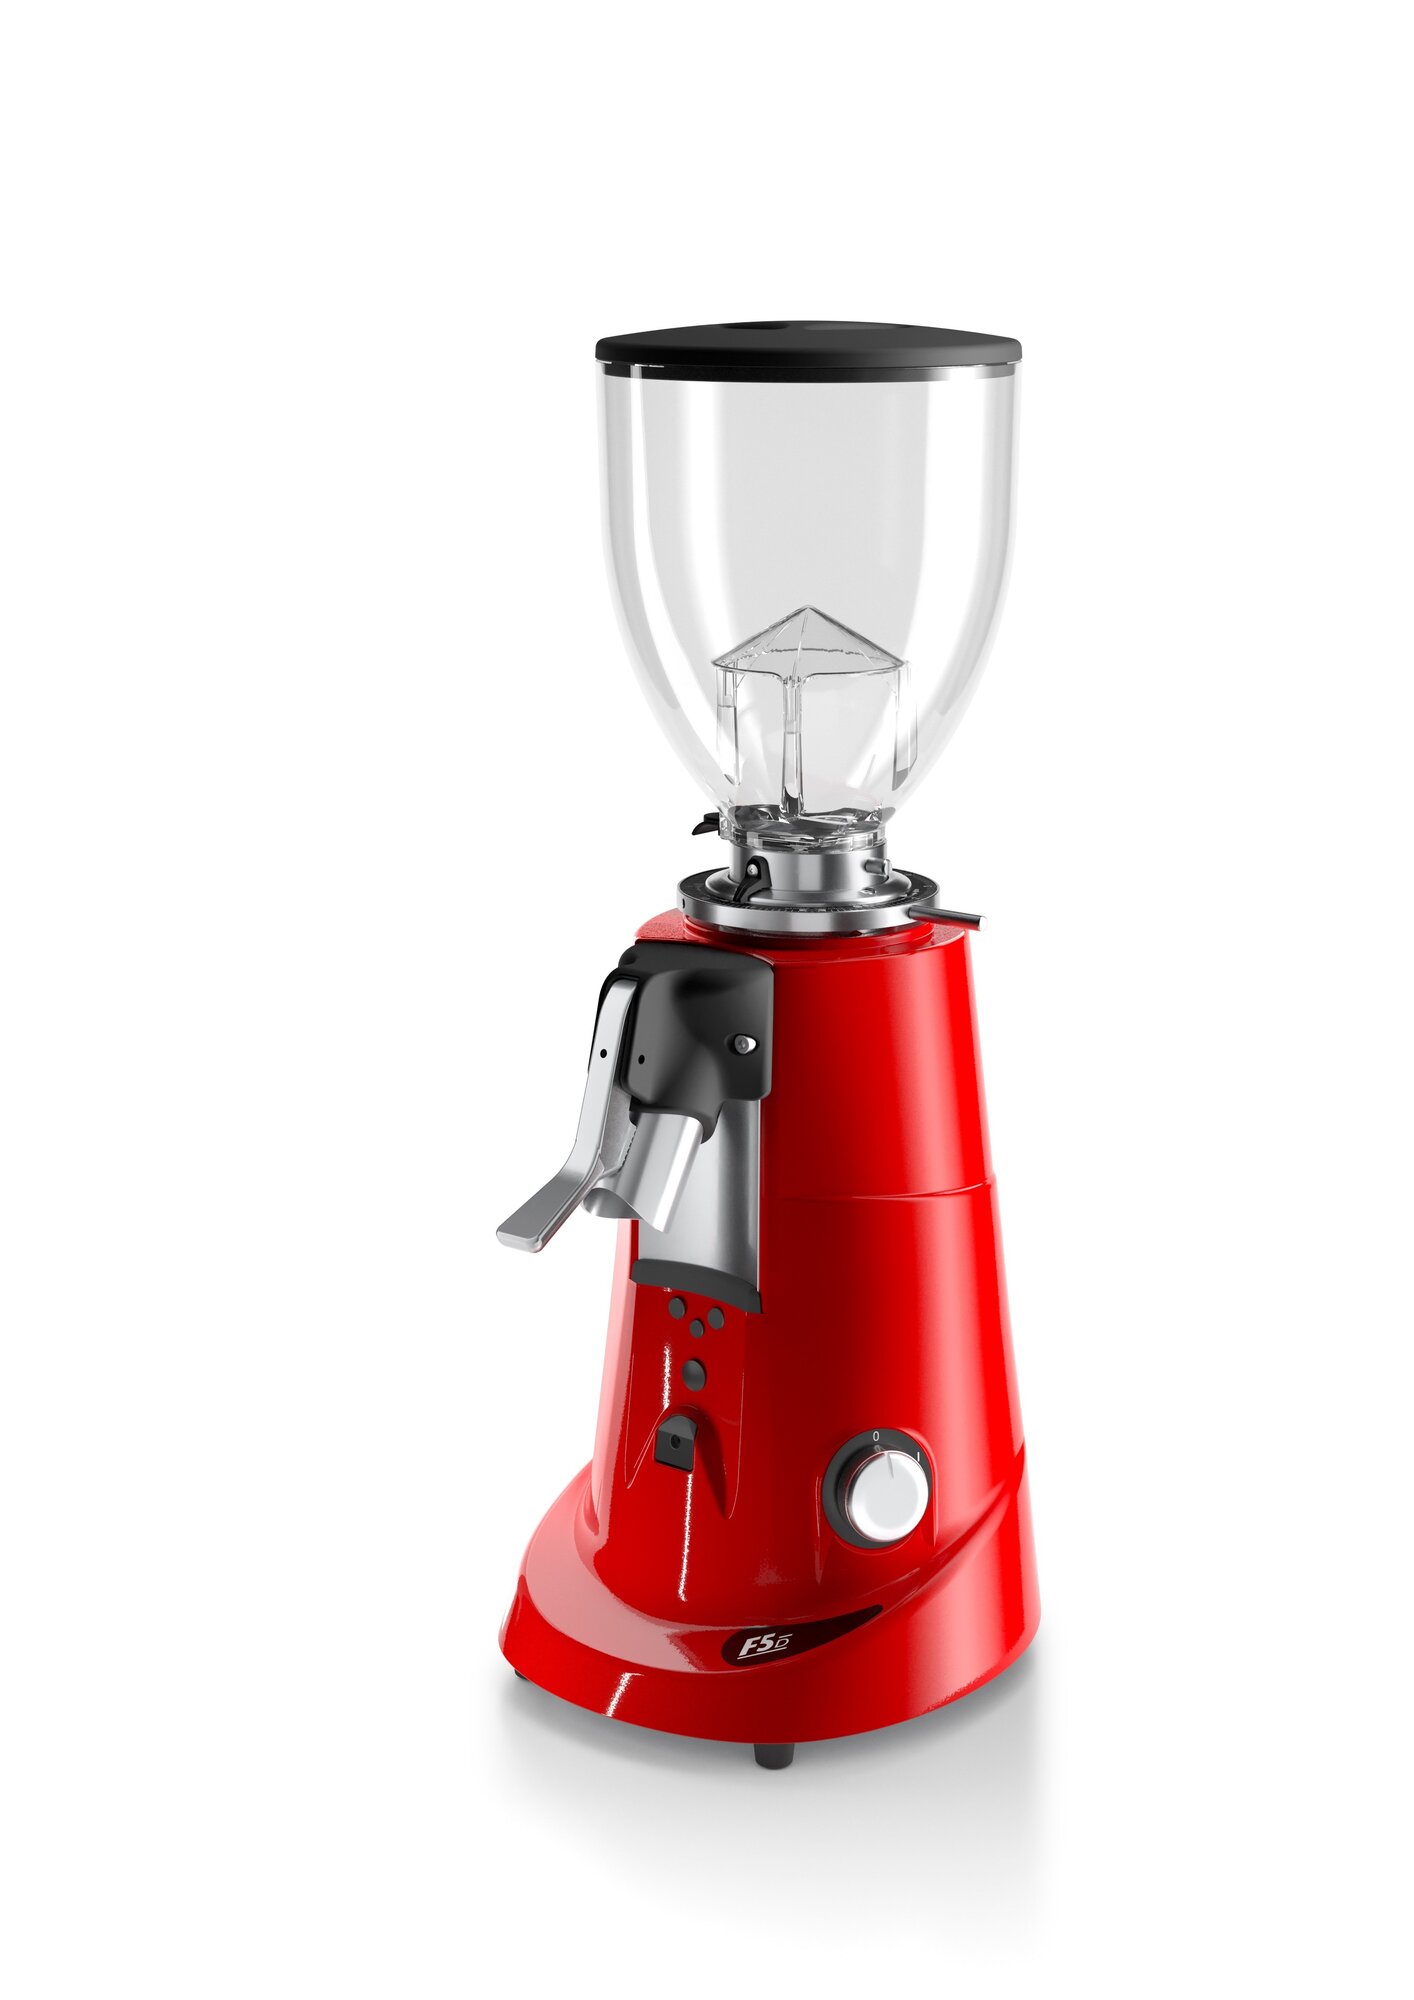 Кофемолка Fiorenzato F 5 DT Timer Red электрическая для дома и кофейни